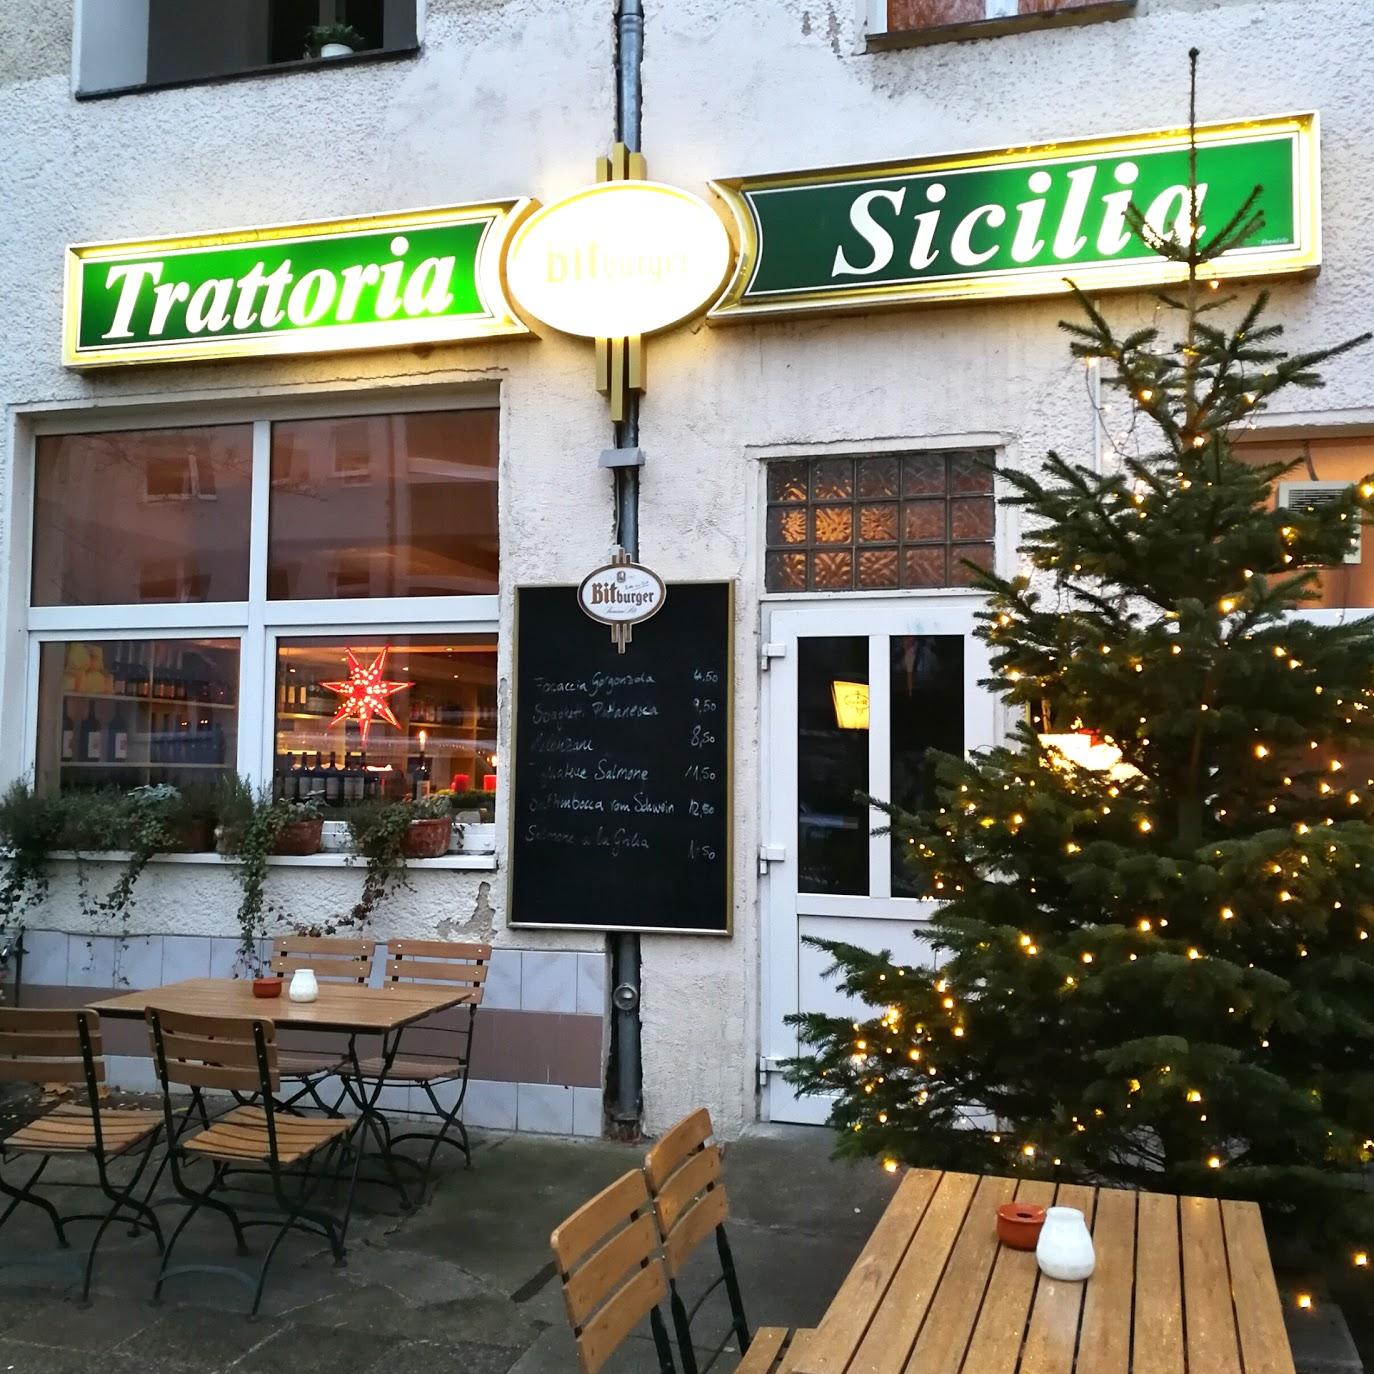 Restaurant "Trattoria Sicilia" in Berlin